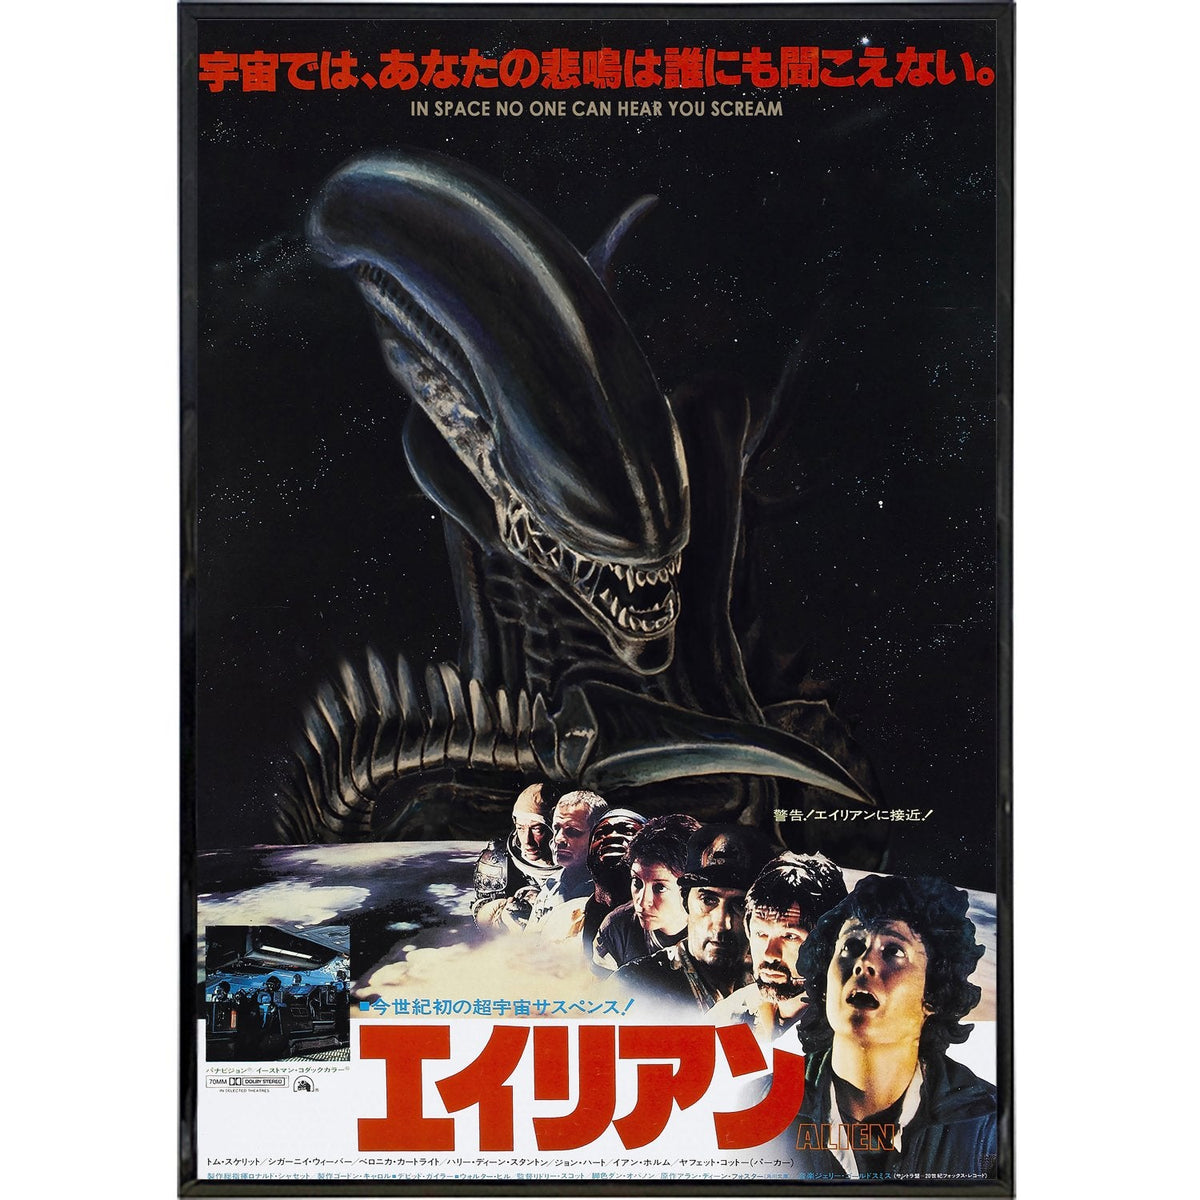 alien poster